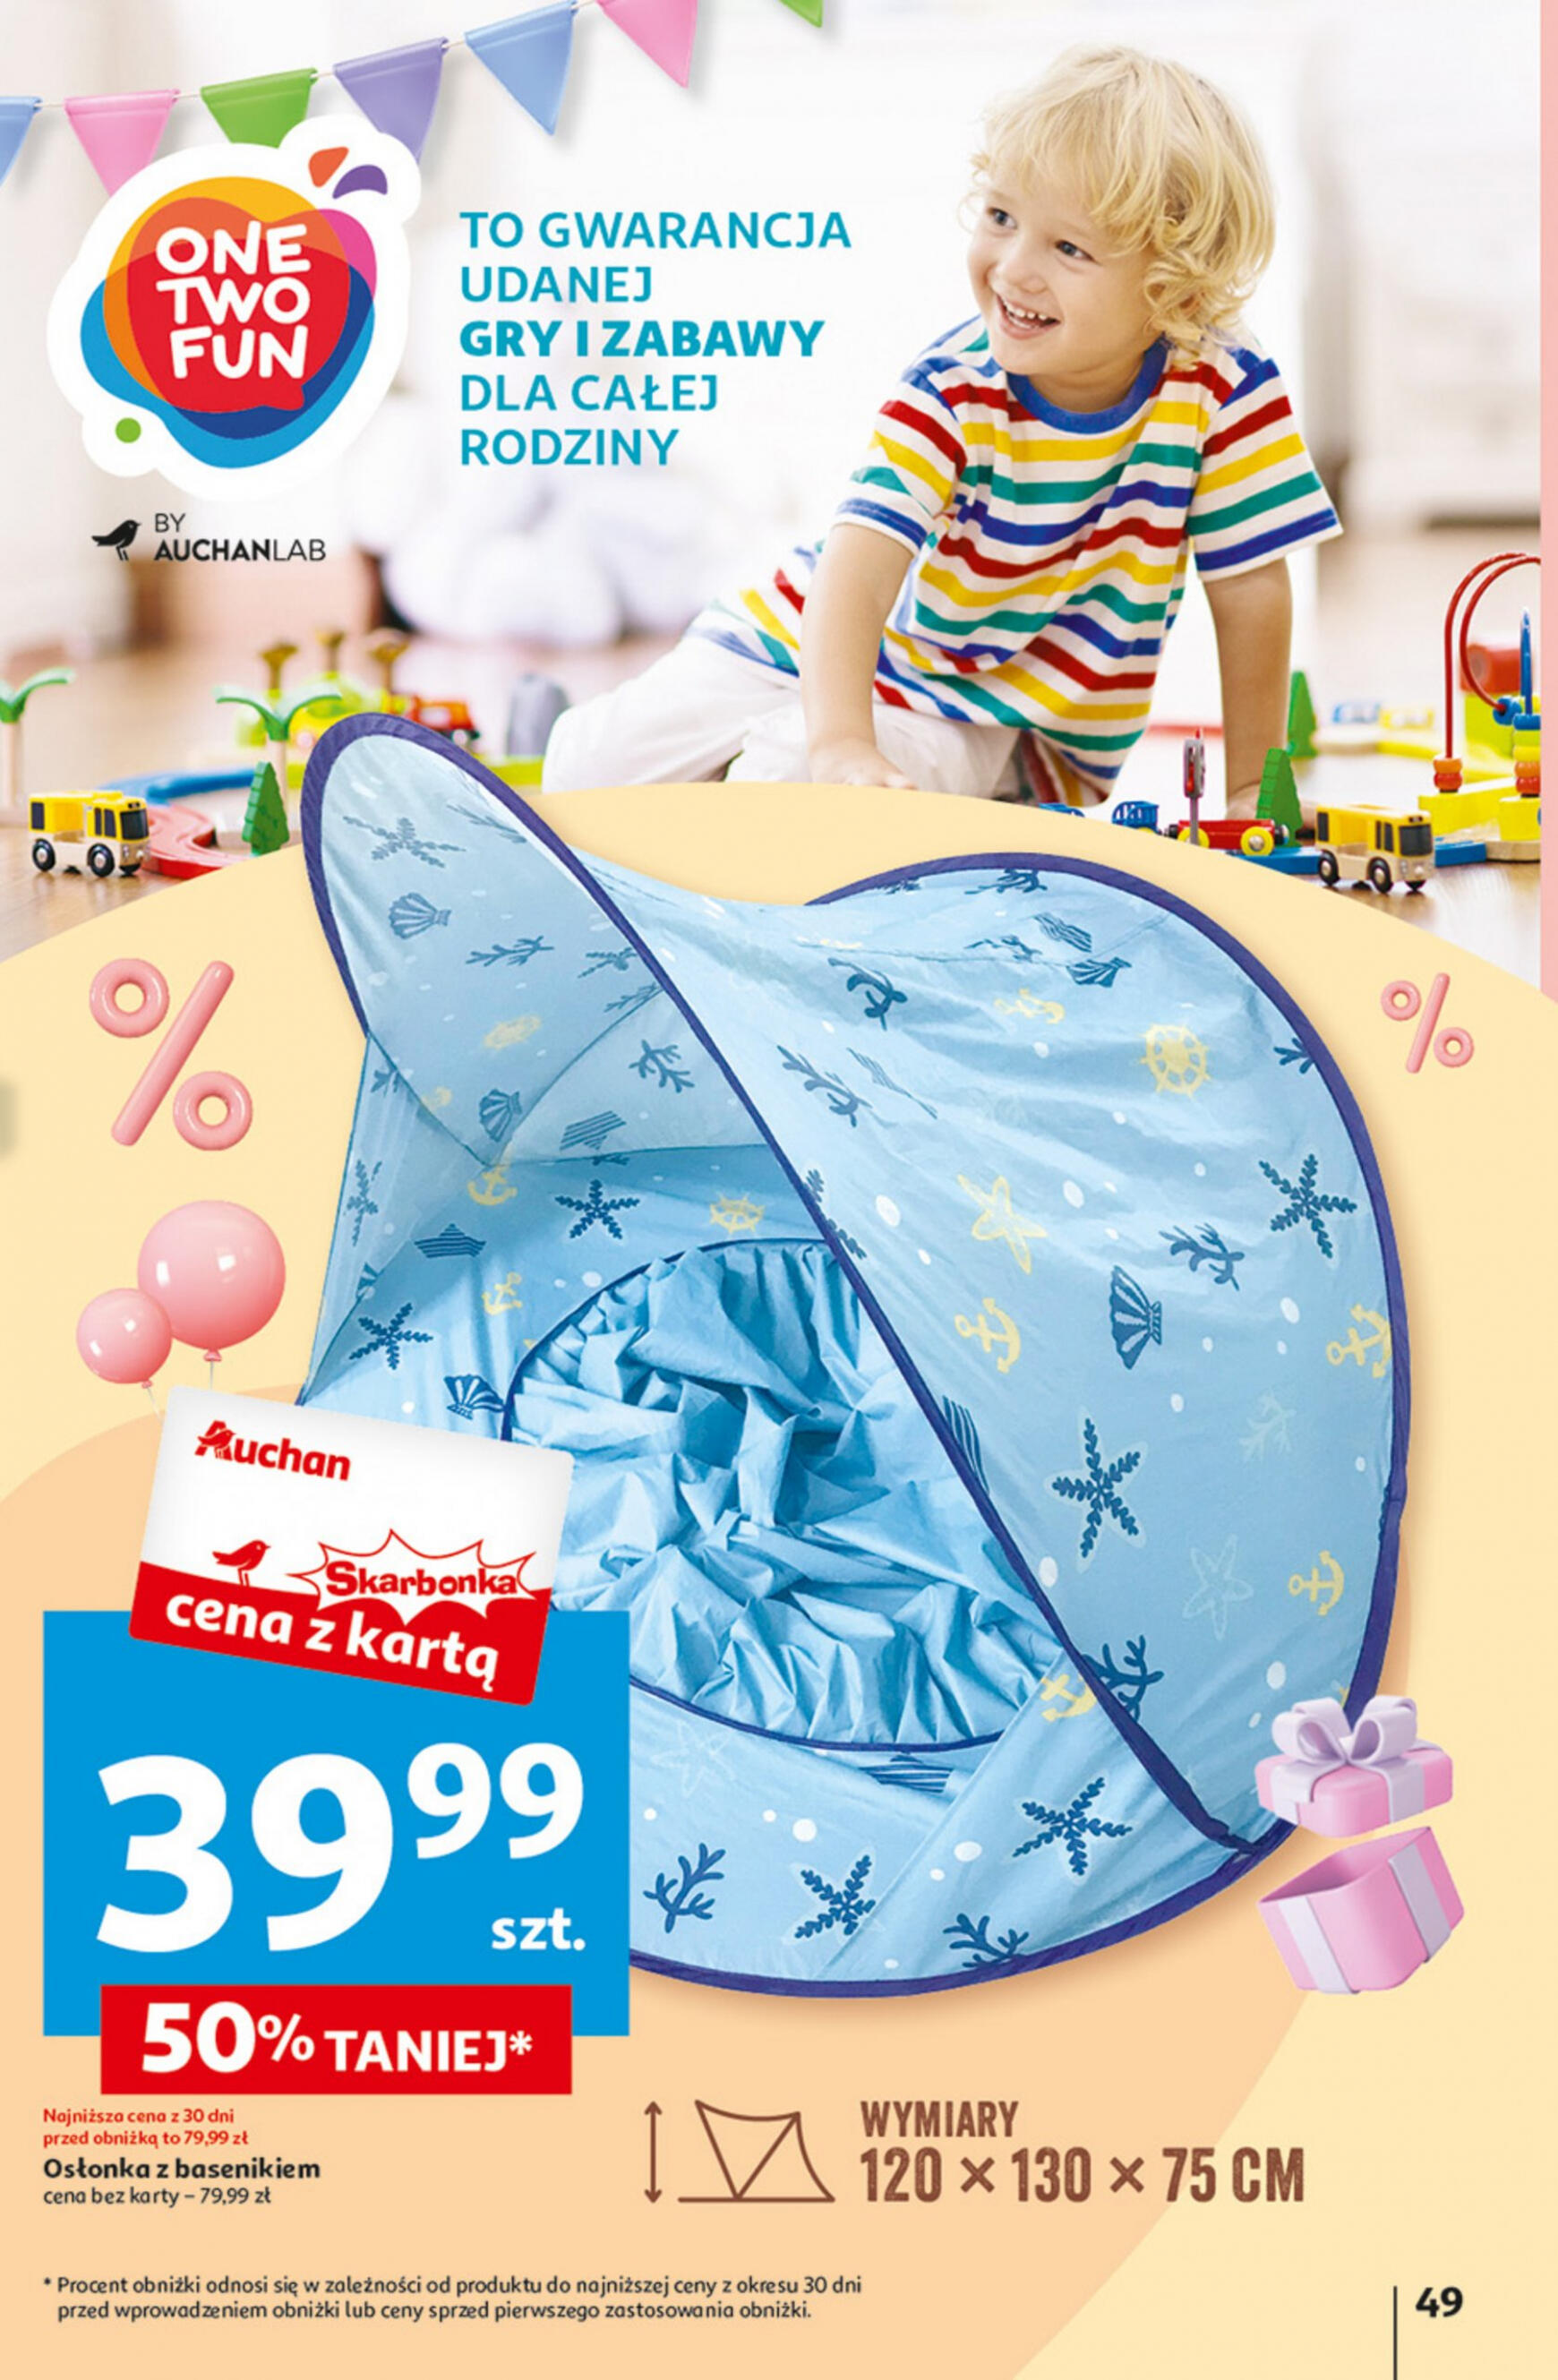 auchan - Hipermarket Auchan - Gazetka Jeszcze taniej na urodziny gazetka aktualna ważna od 09.05. - 15.05. - page: 49